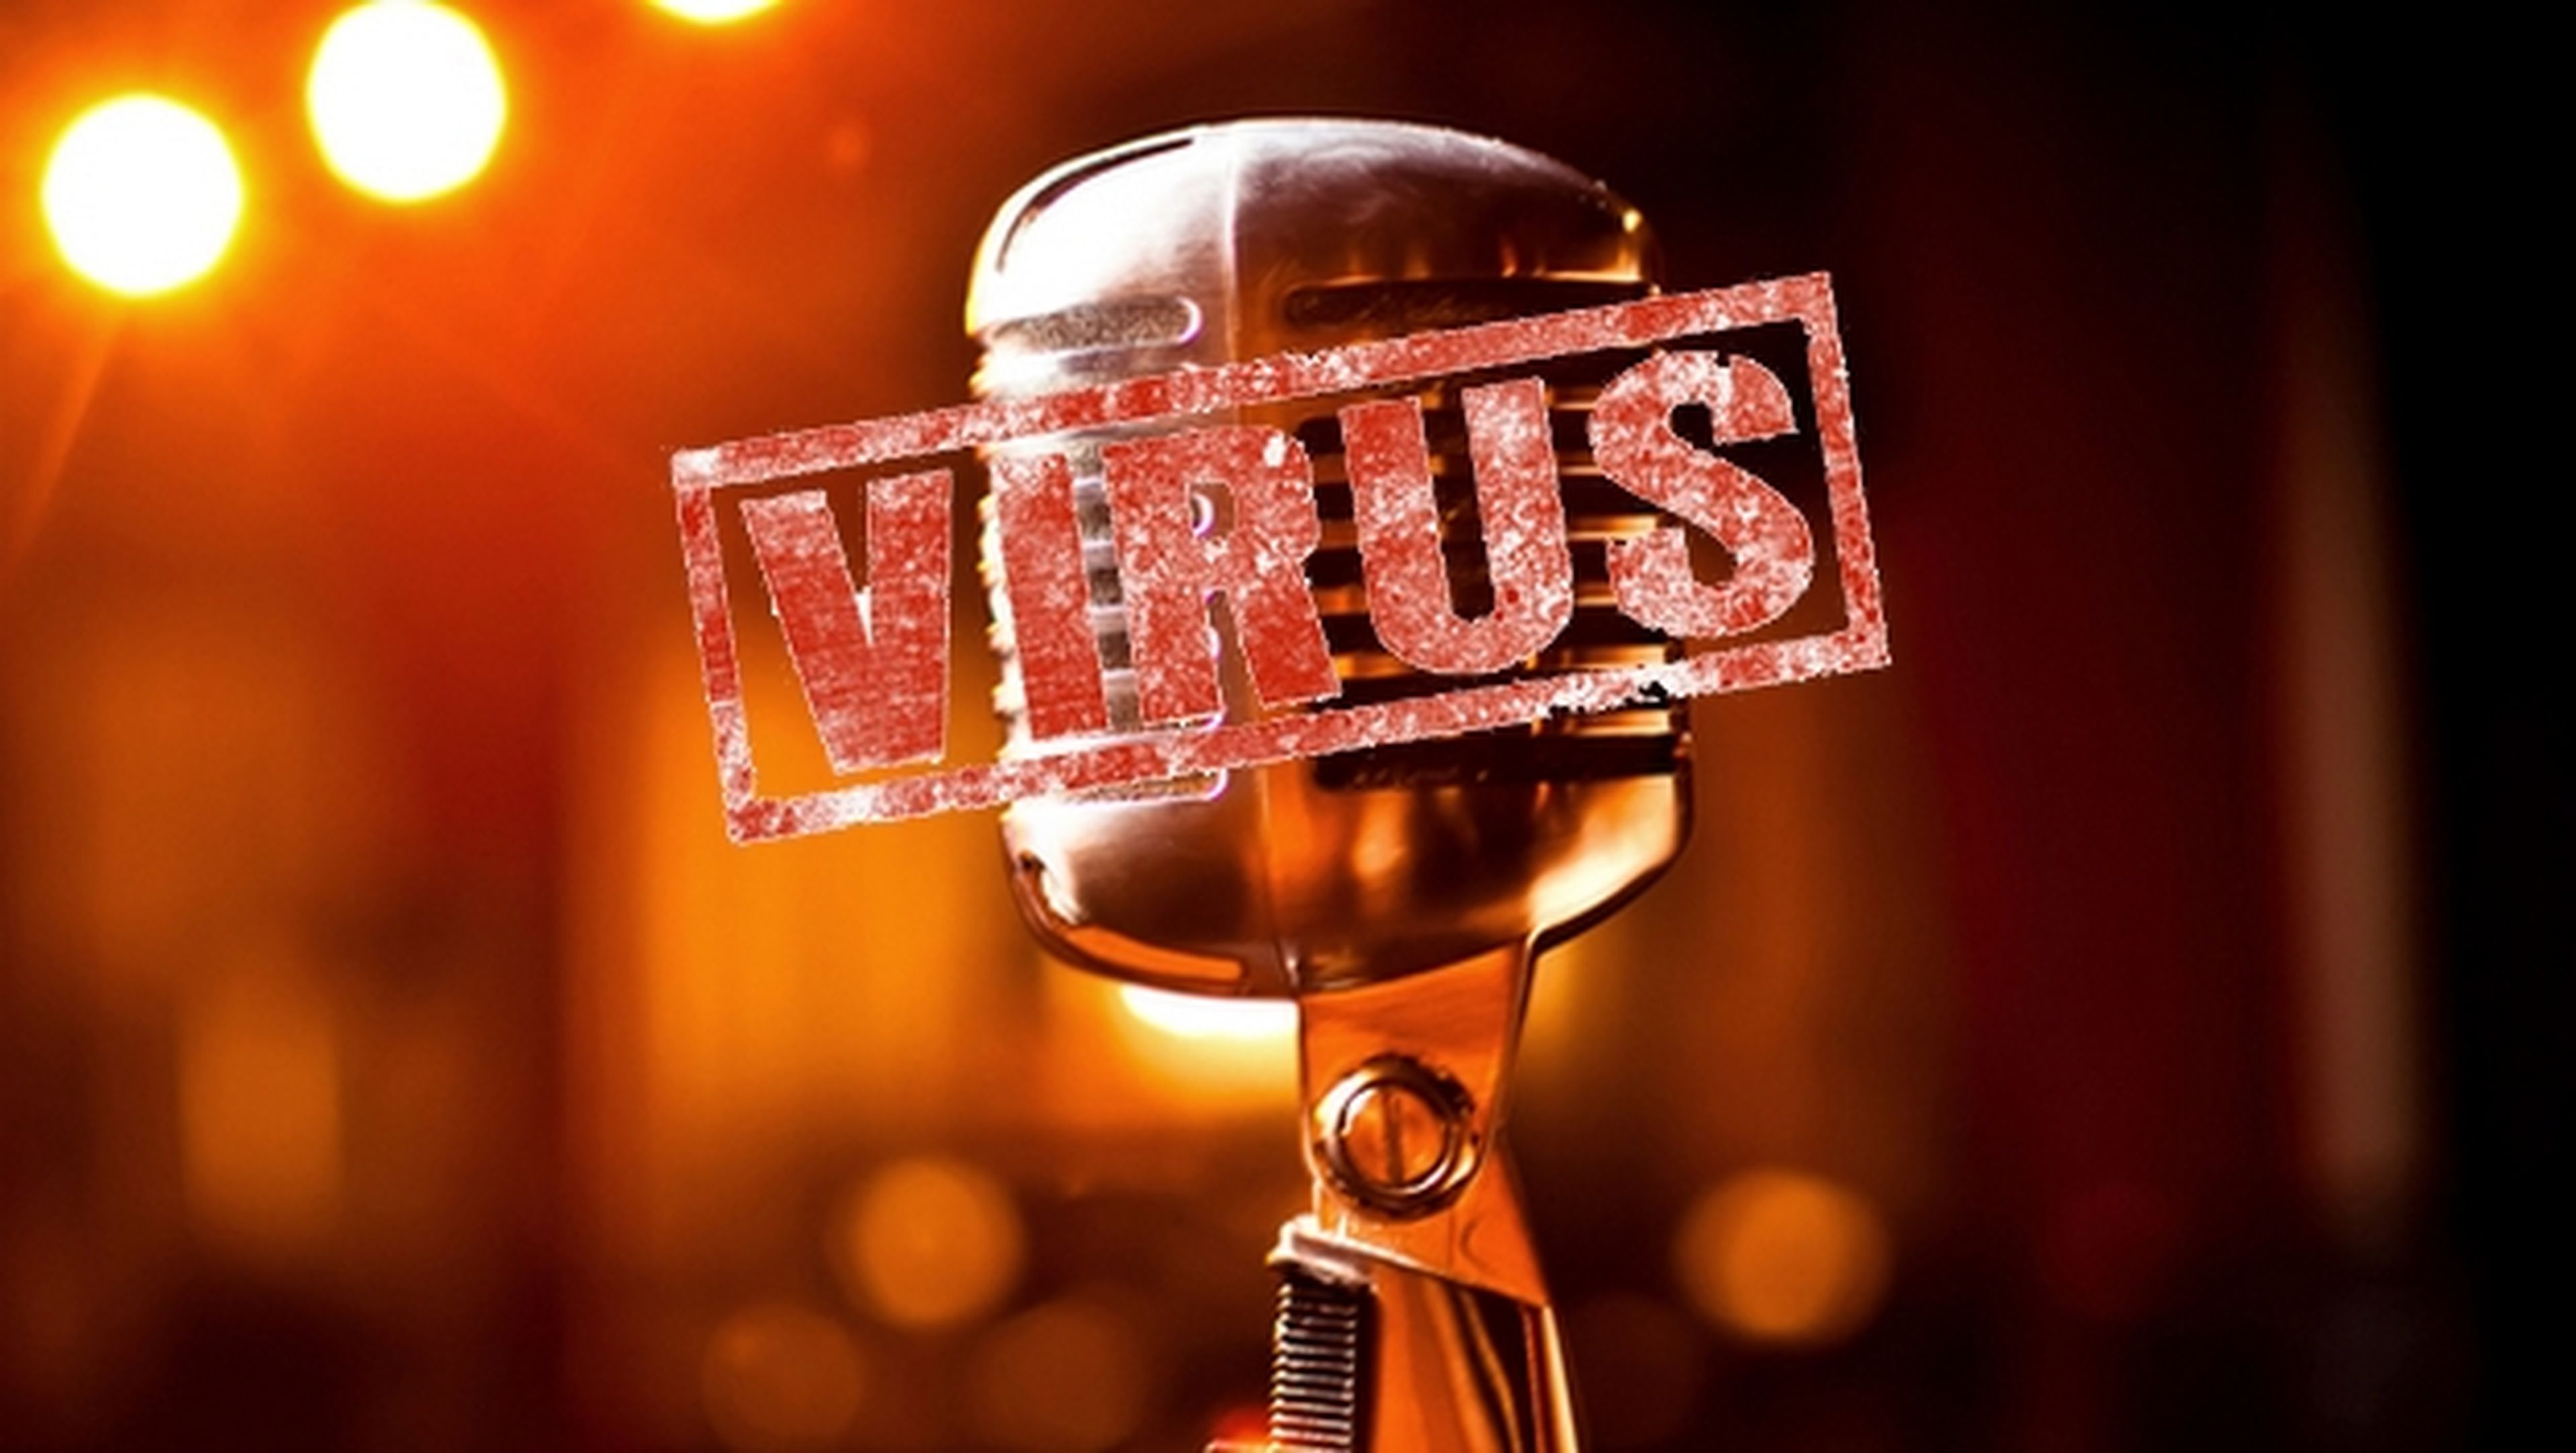 El virus badBIOS contamina los PCs por sonido, usando el micrófono